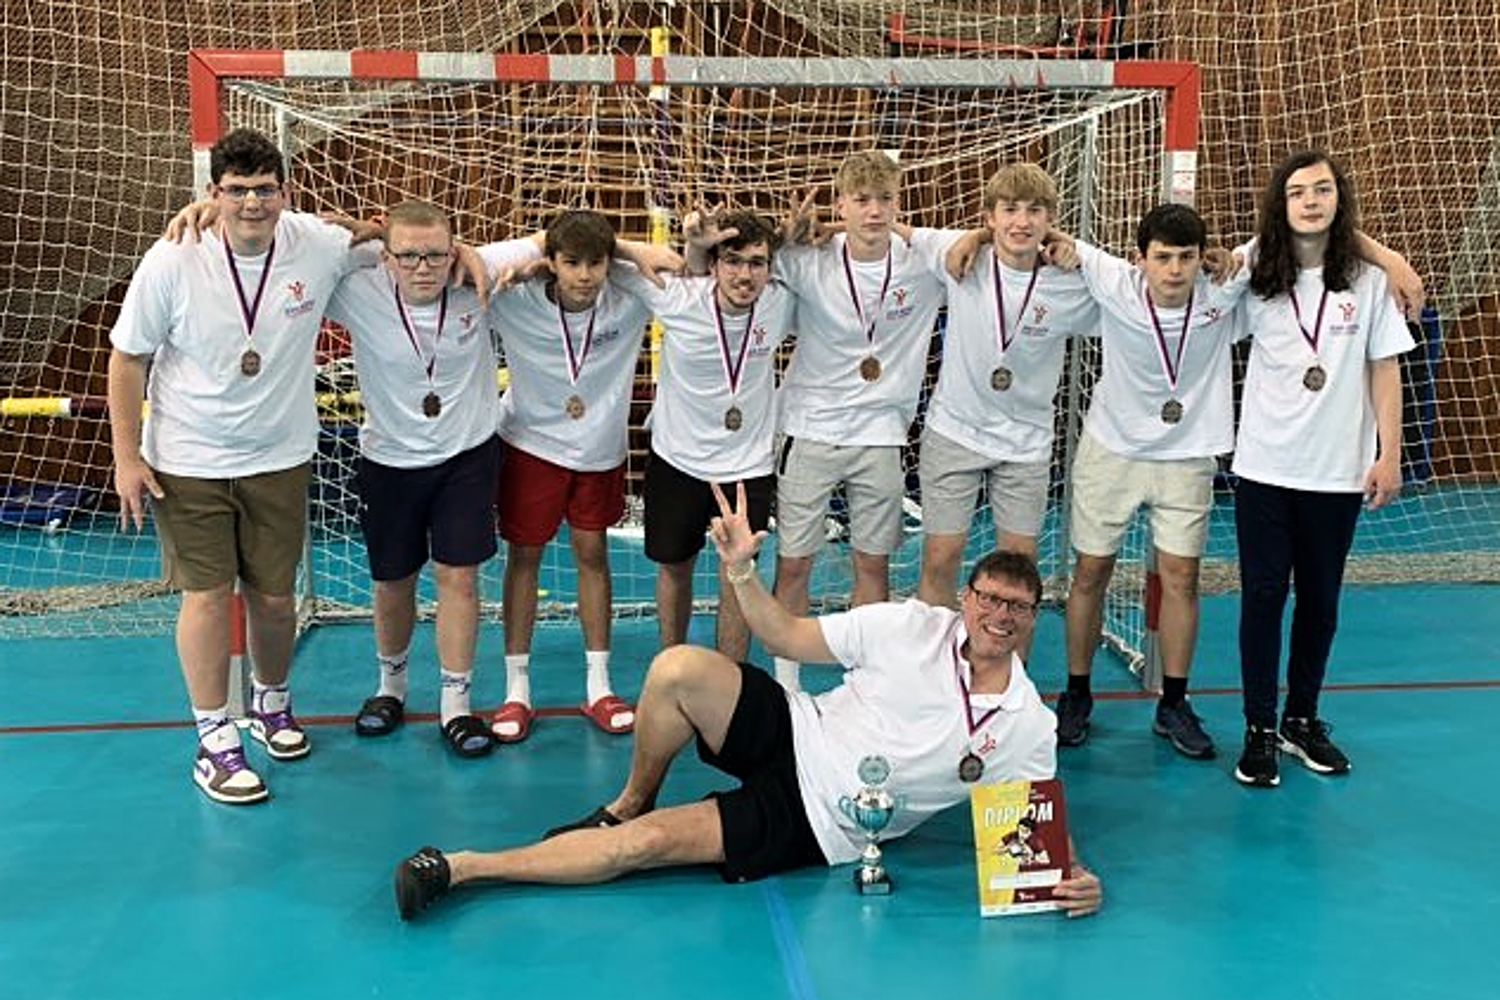 Moravskoslezský kraj skončil třetí na turnaji výběrů krajů. K bronzu pomohlo osm hráčů SKP i trenér Mazur